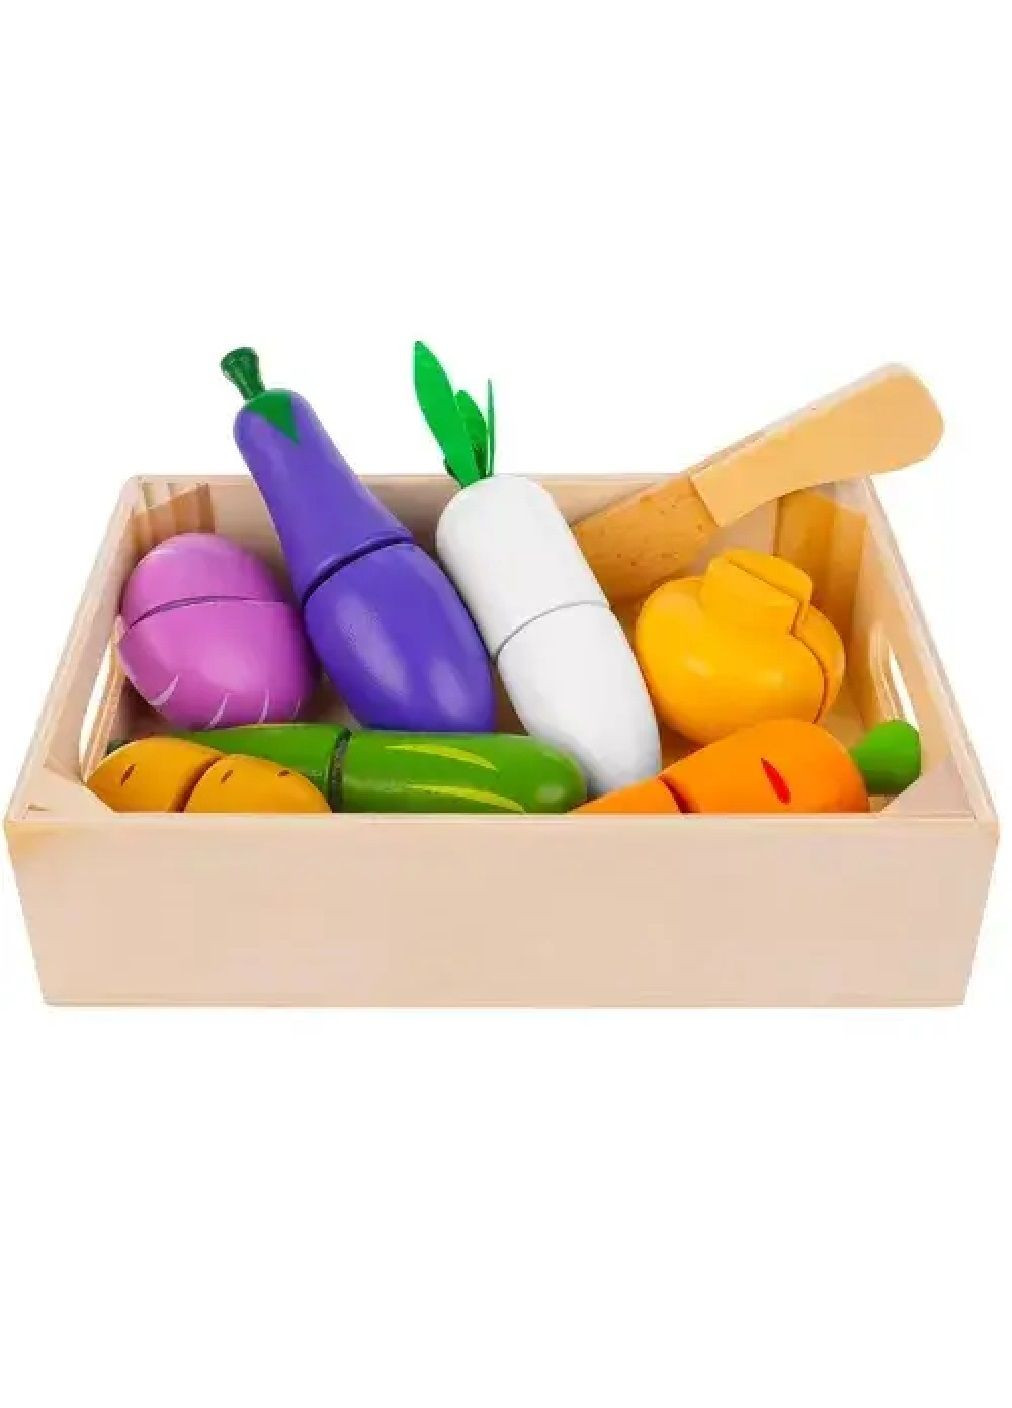 Дитячий дерев'яний комплект набір овочів фруктів на липучці для нарізування в ящику 9 елементів 18х12,5х4,4 см (476857-Prob) Unbranded (292111613)